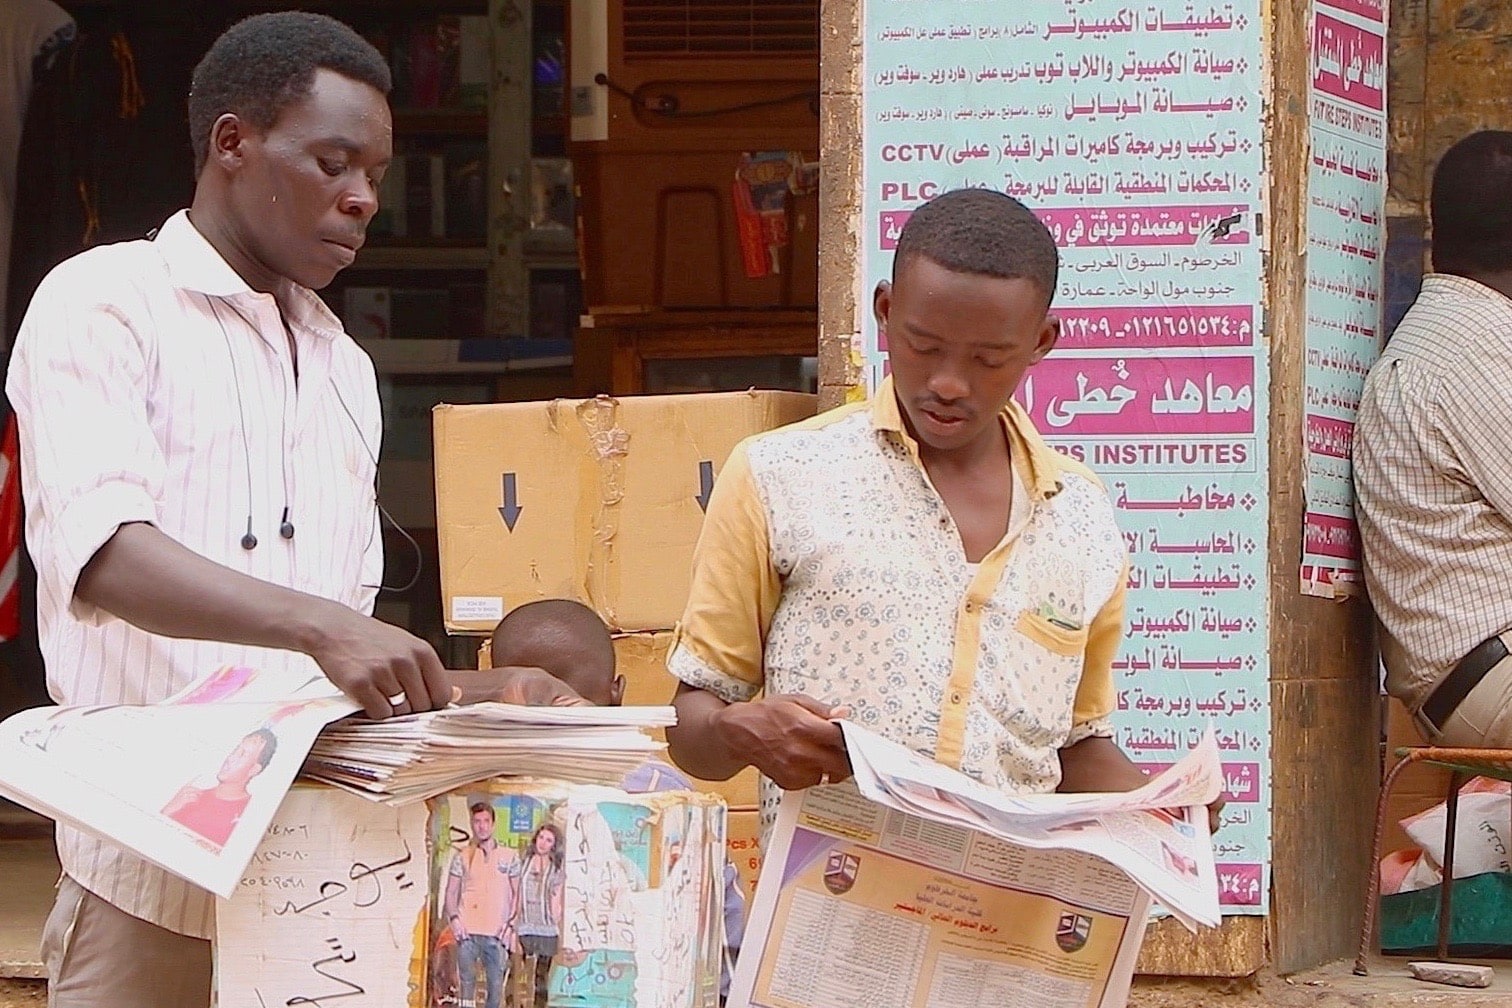 A newspaper stand in Khartoum, Nuba Reports